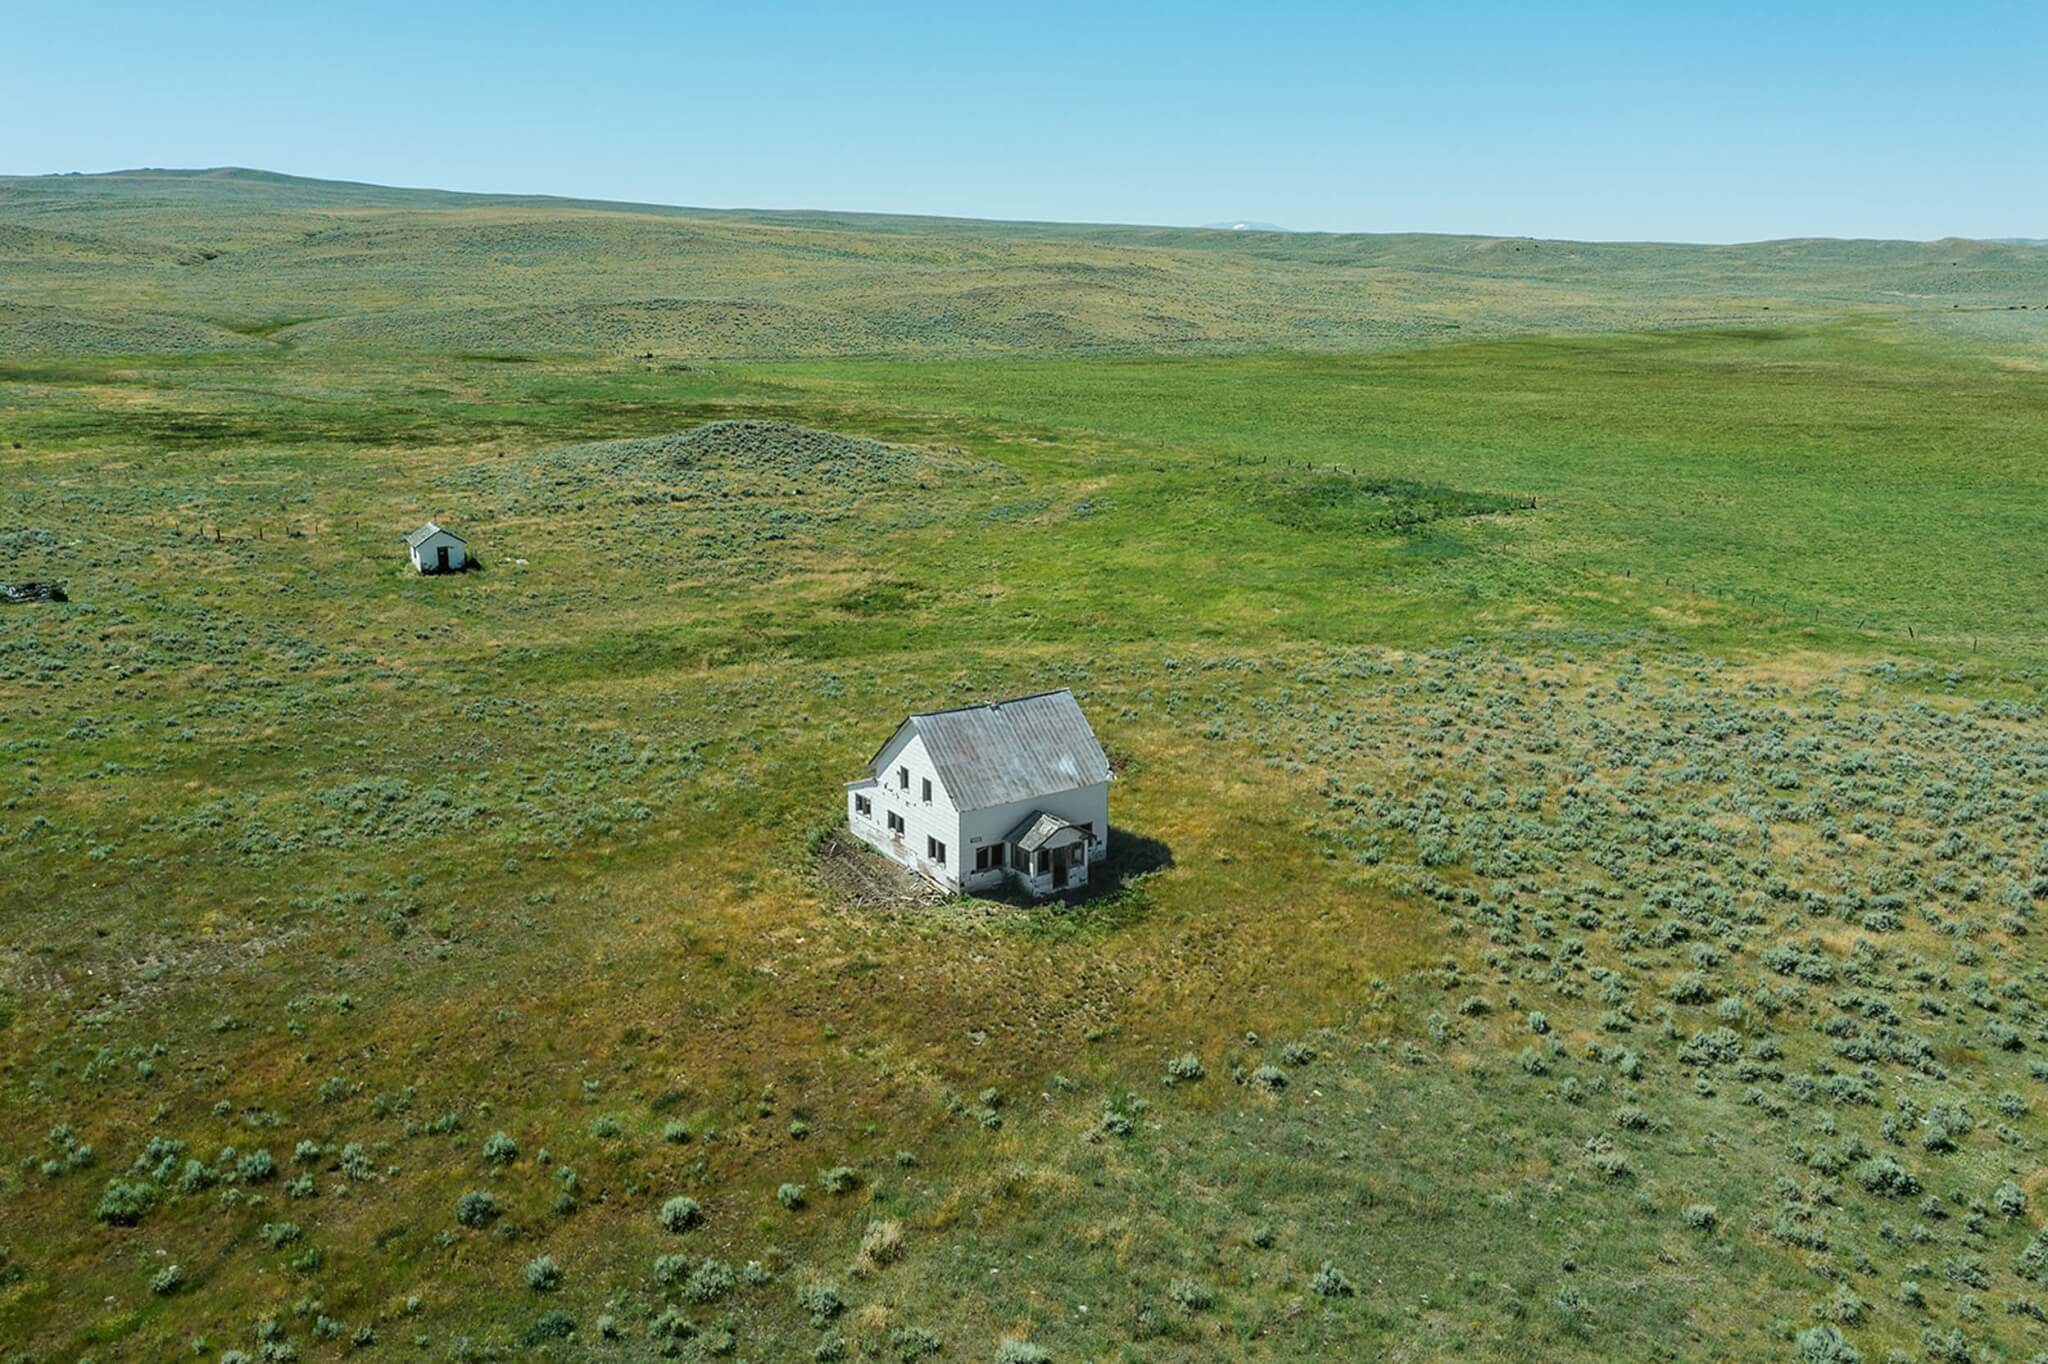 تصویر هوایی از خانه در چمنزار باز